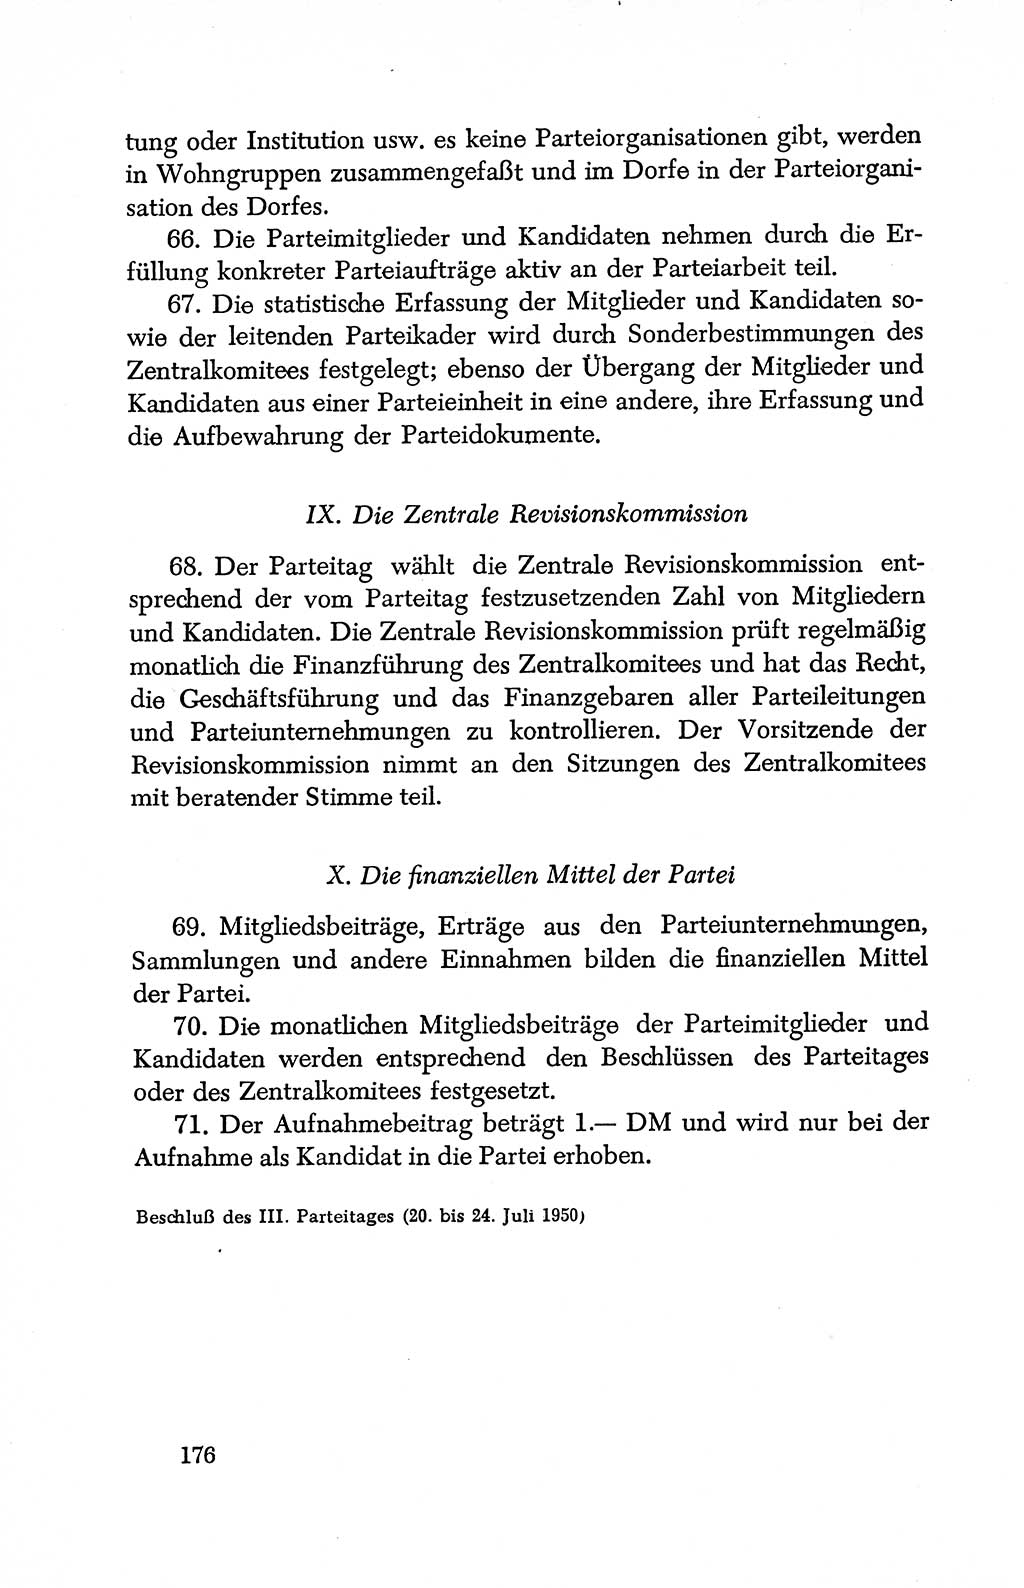 Dokumente der Sozialistischen Einheitspartei Deutschlands (SED) [Deutsche Demokratische Republik (DDR)] 1950-1952, Seite 176 (Dok. SED DDR 1950-1952, S. 176)